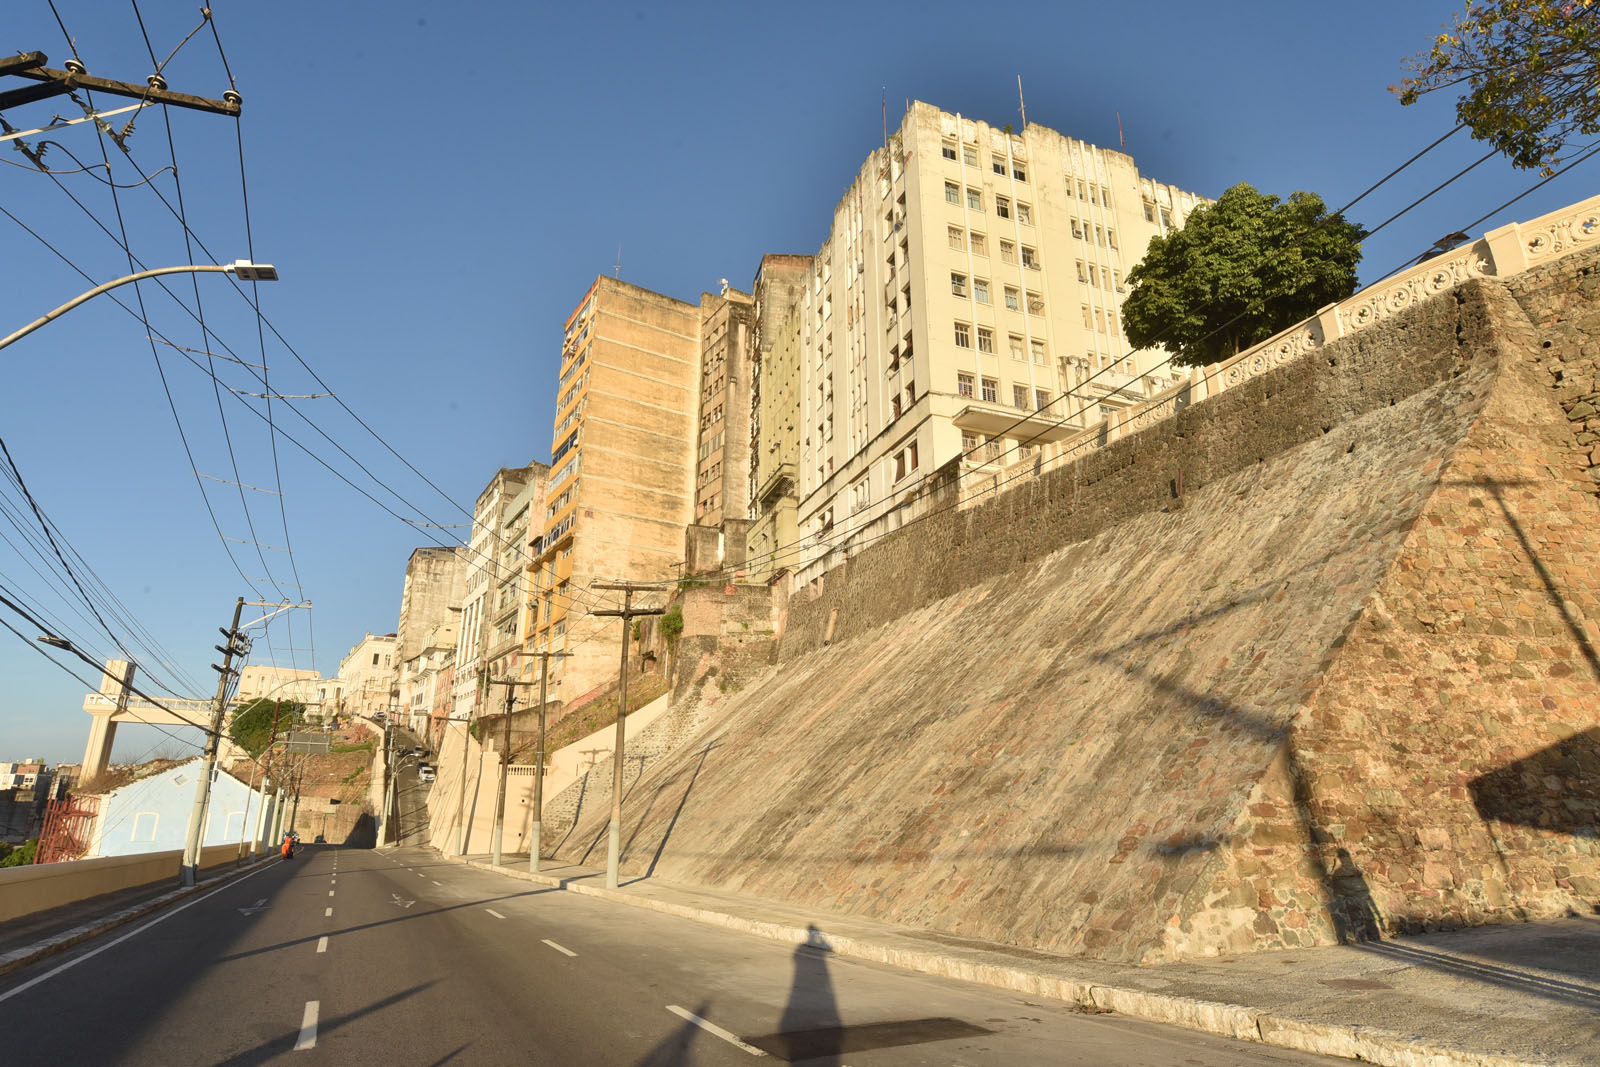 Muralhas do Frontispício é mais novo local histórico requalificado em Salvador